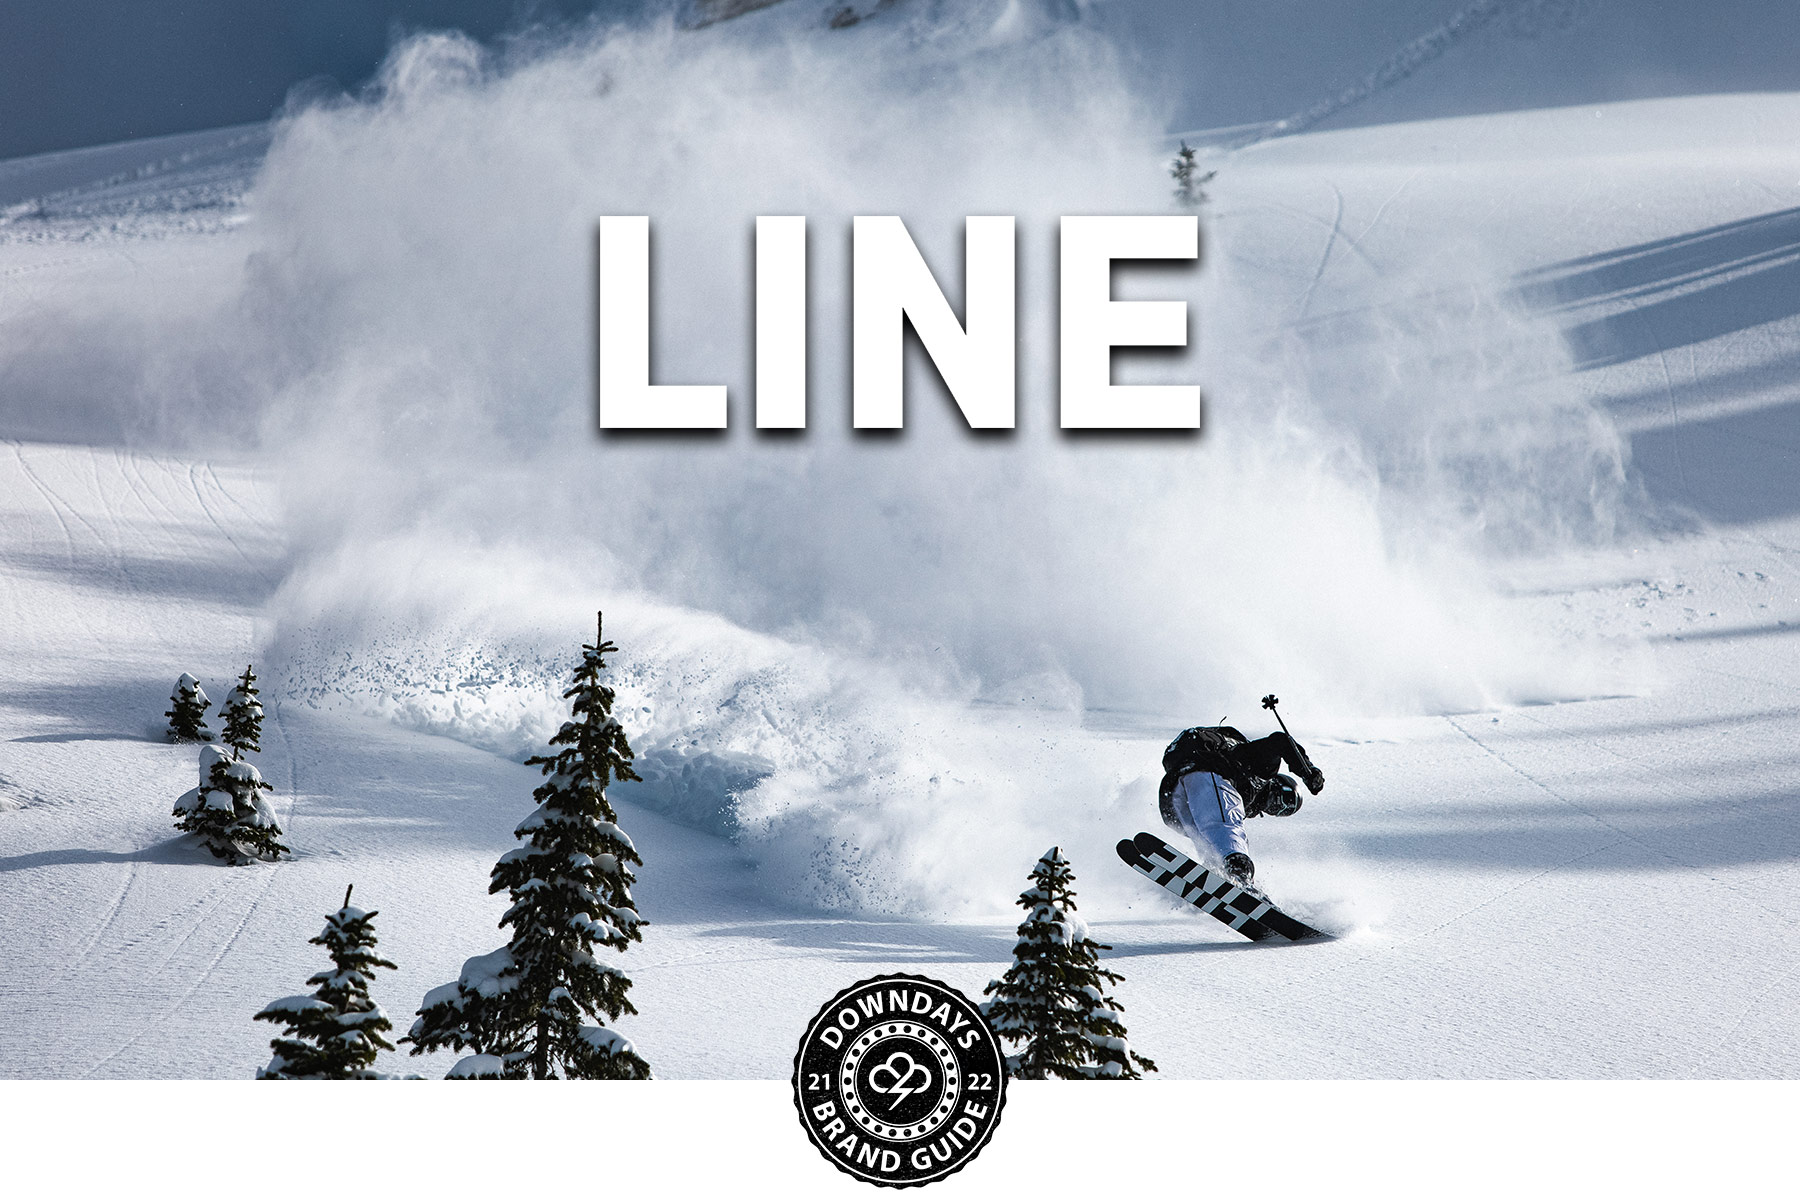 Line Skis Desktop Header, Downdays 2021/2022 Brand Guide